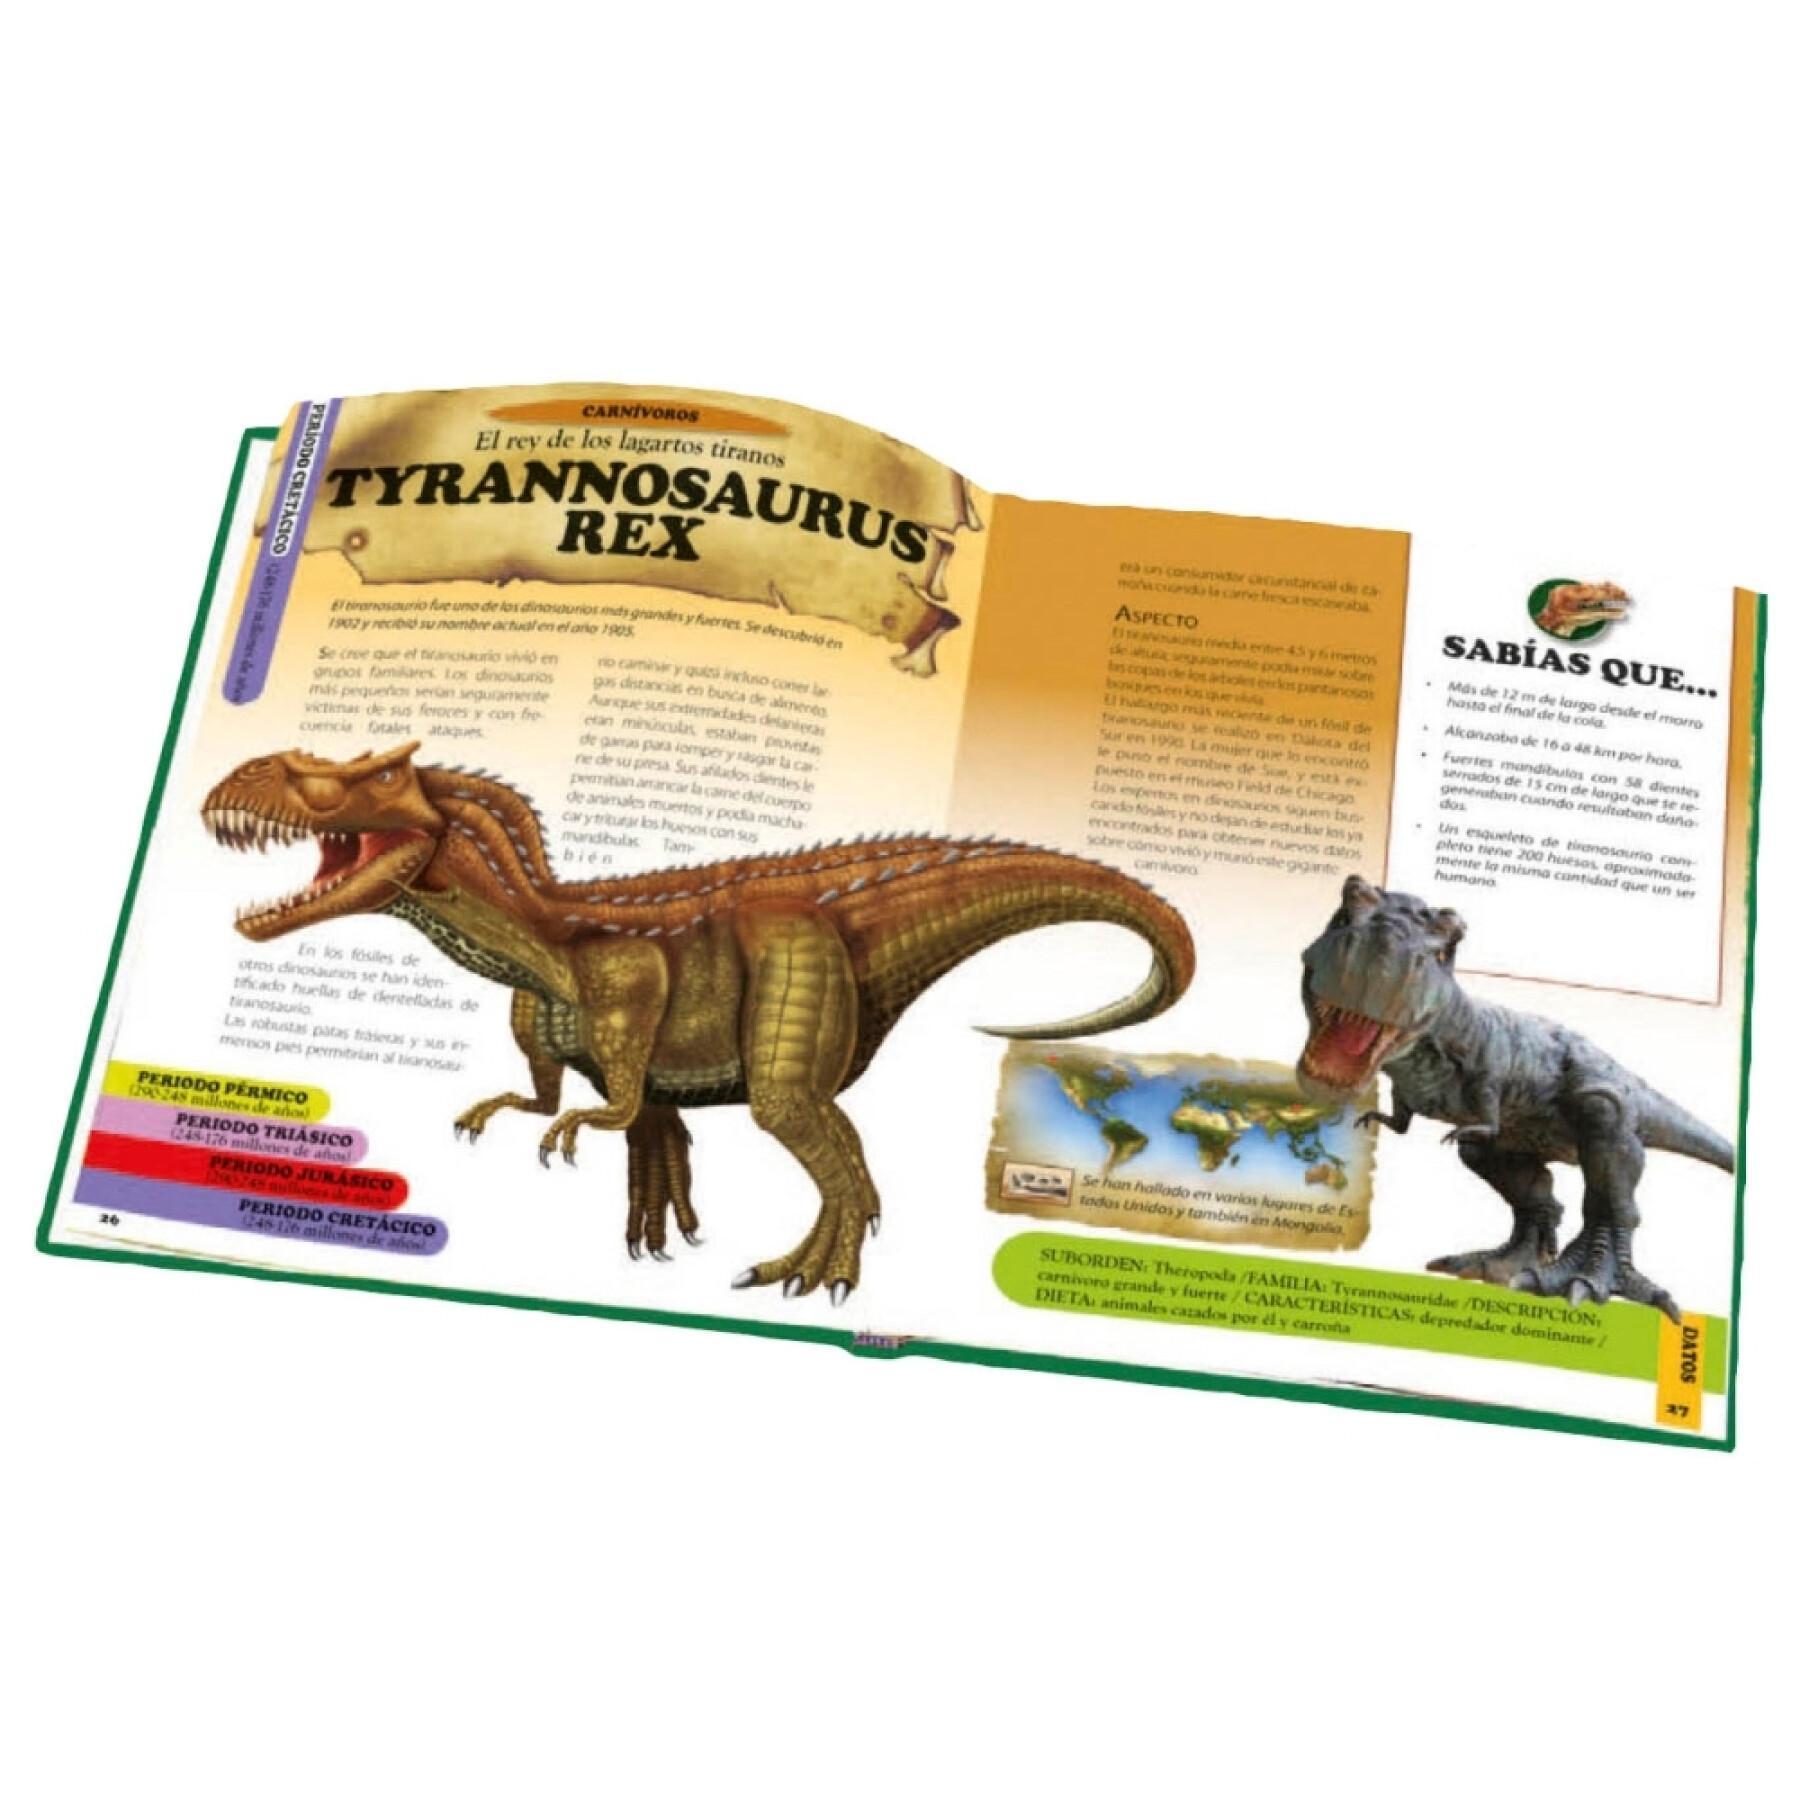 Libro enciclopedia de dinosaurios de 28 páginas Ediciones Saldaña